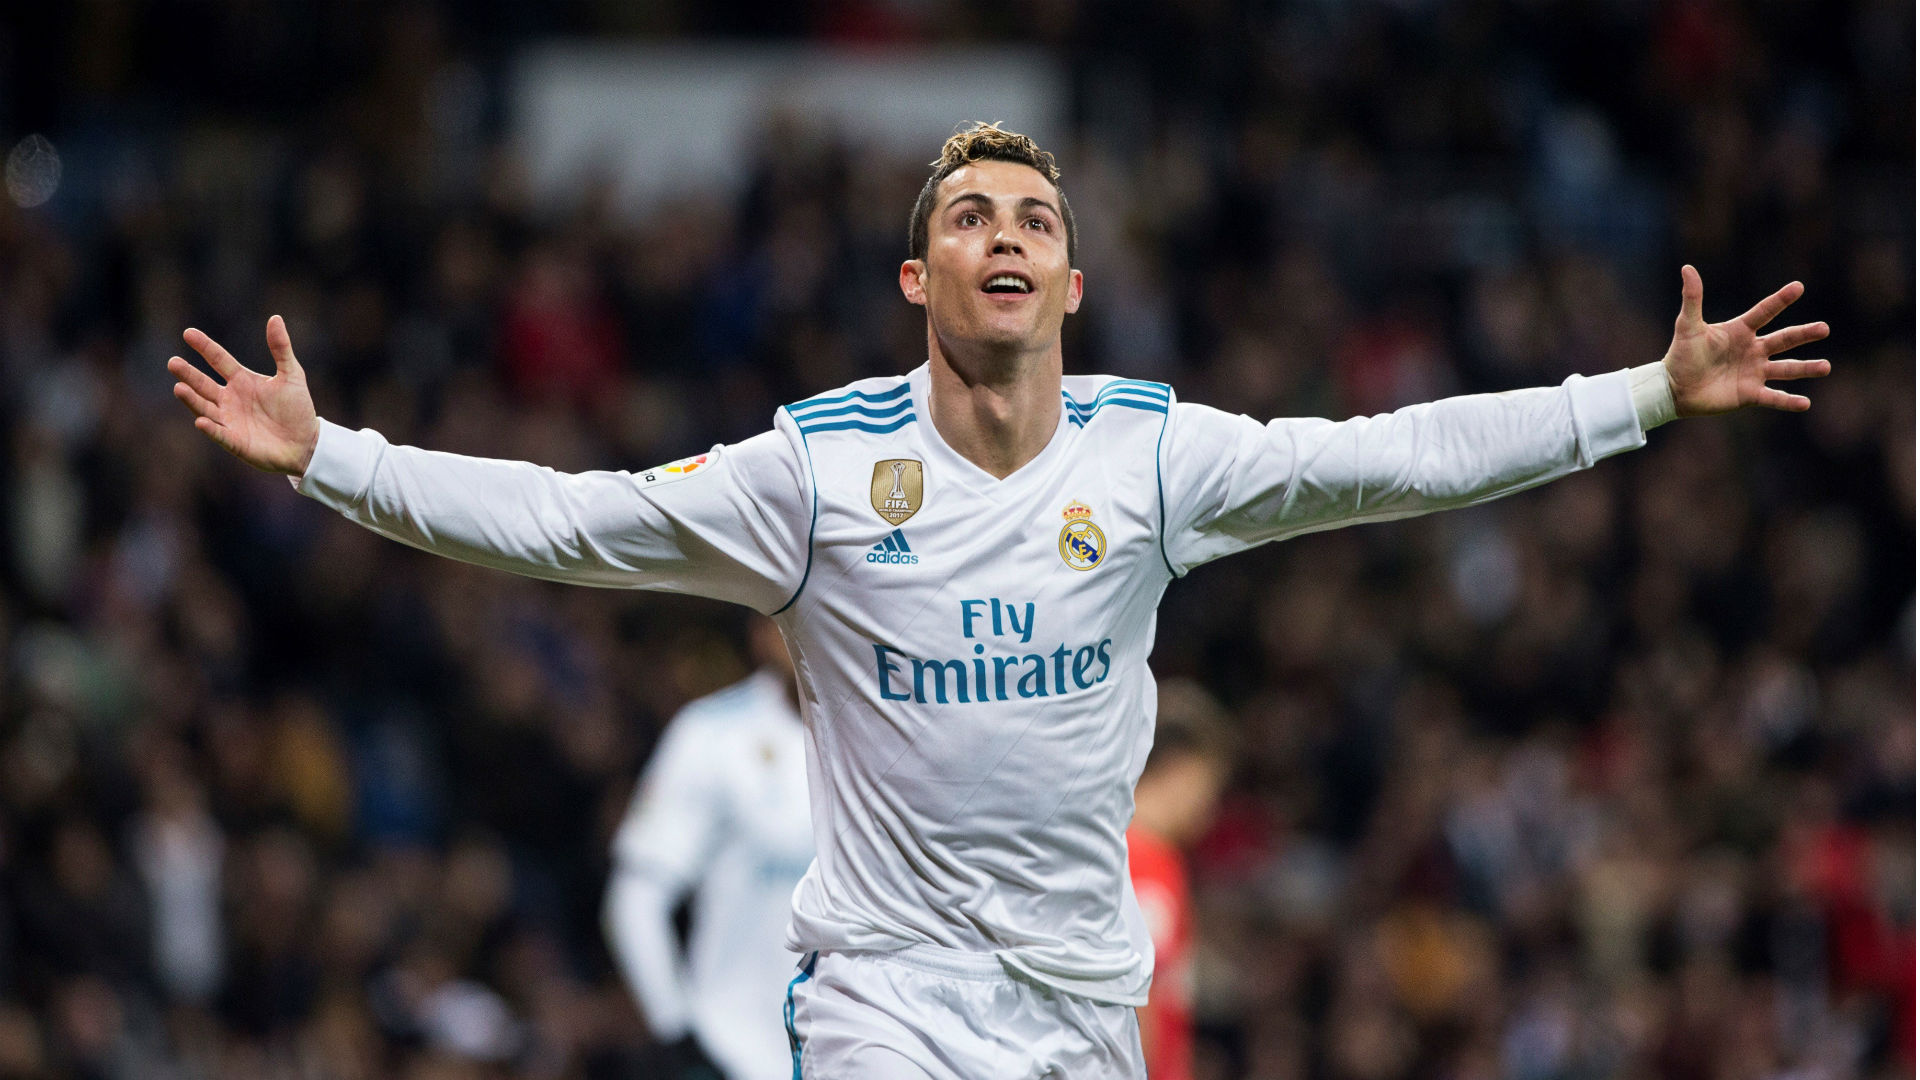 El Real Madrid gana 5-2 a la Real Sociedad con un triplete de Ronaldo